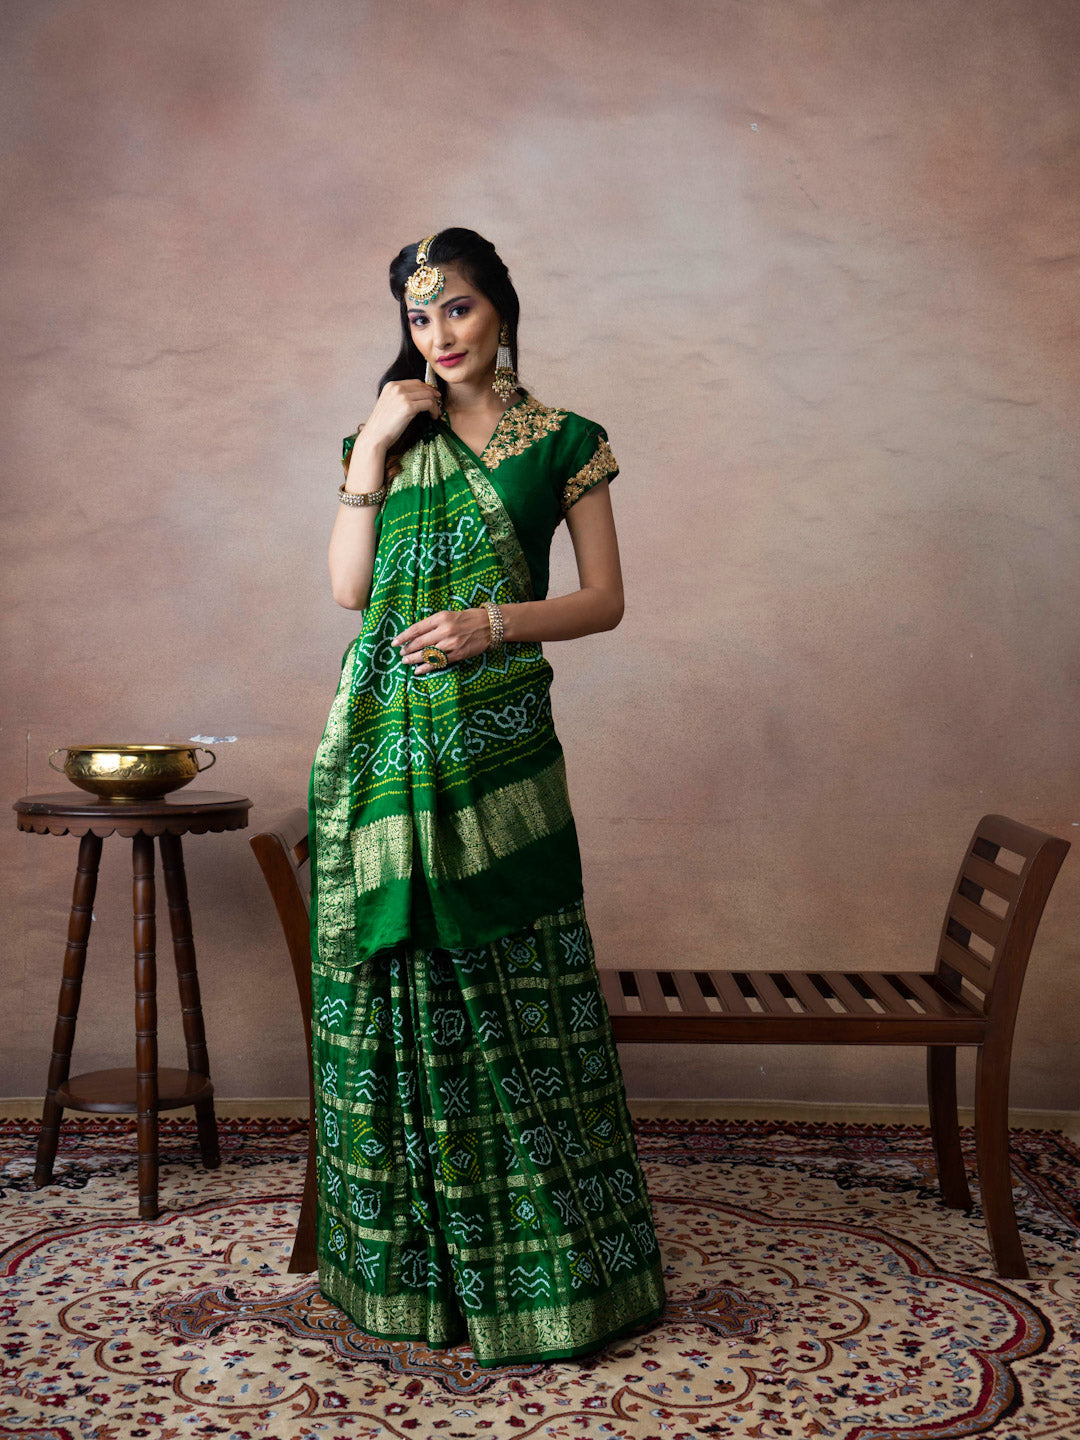 Traditional Dresses of Gujarat. गुजरात के पारंपरिक परिधान